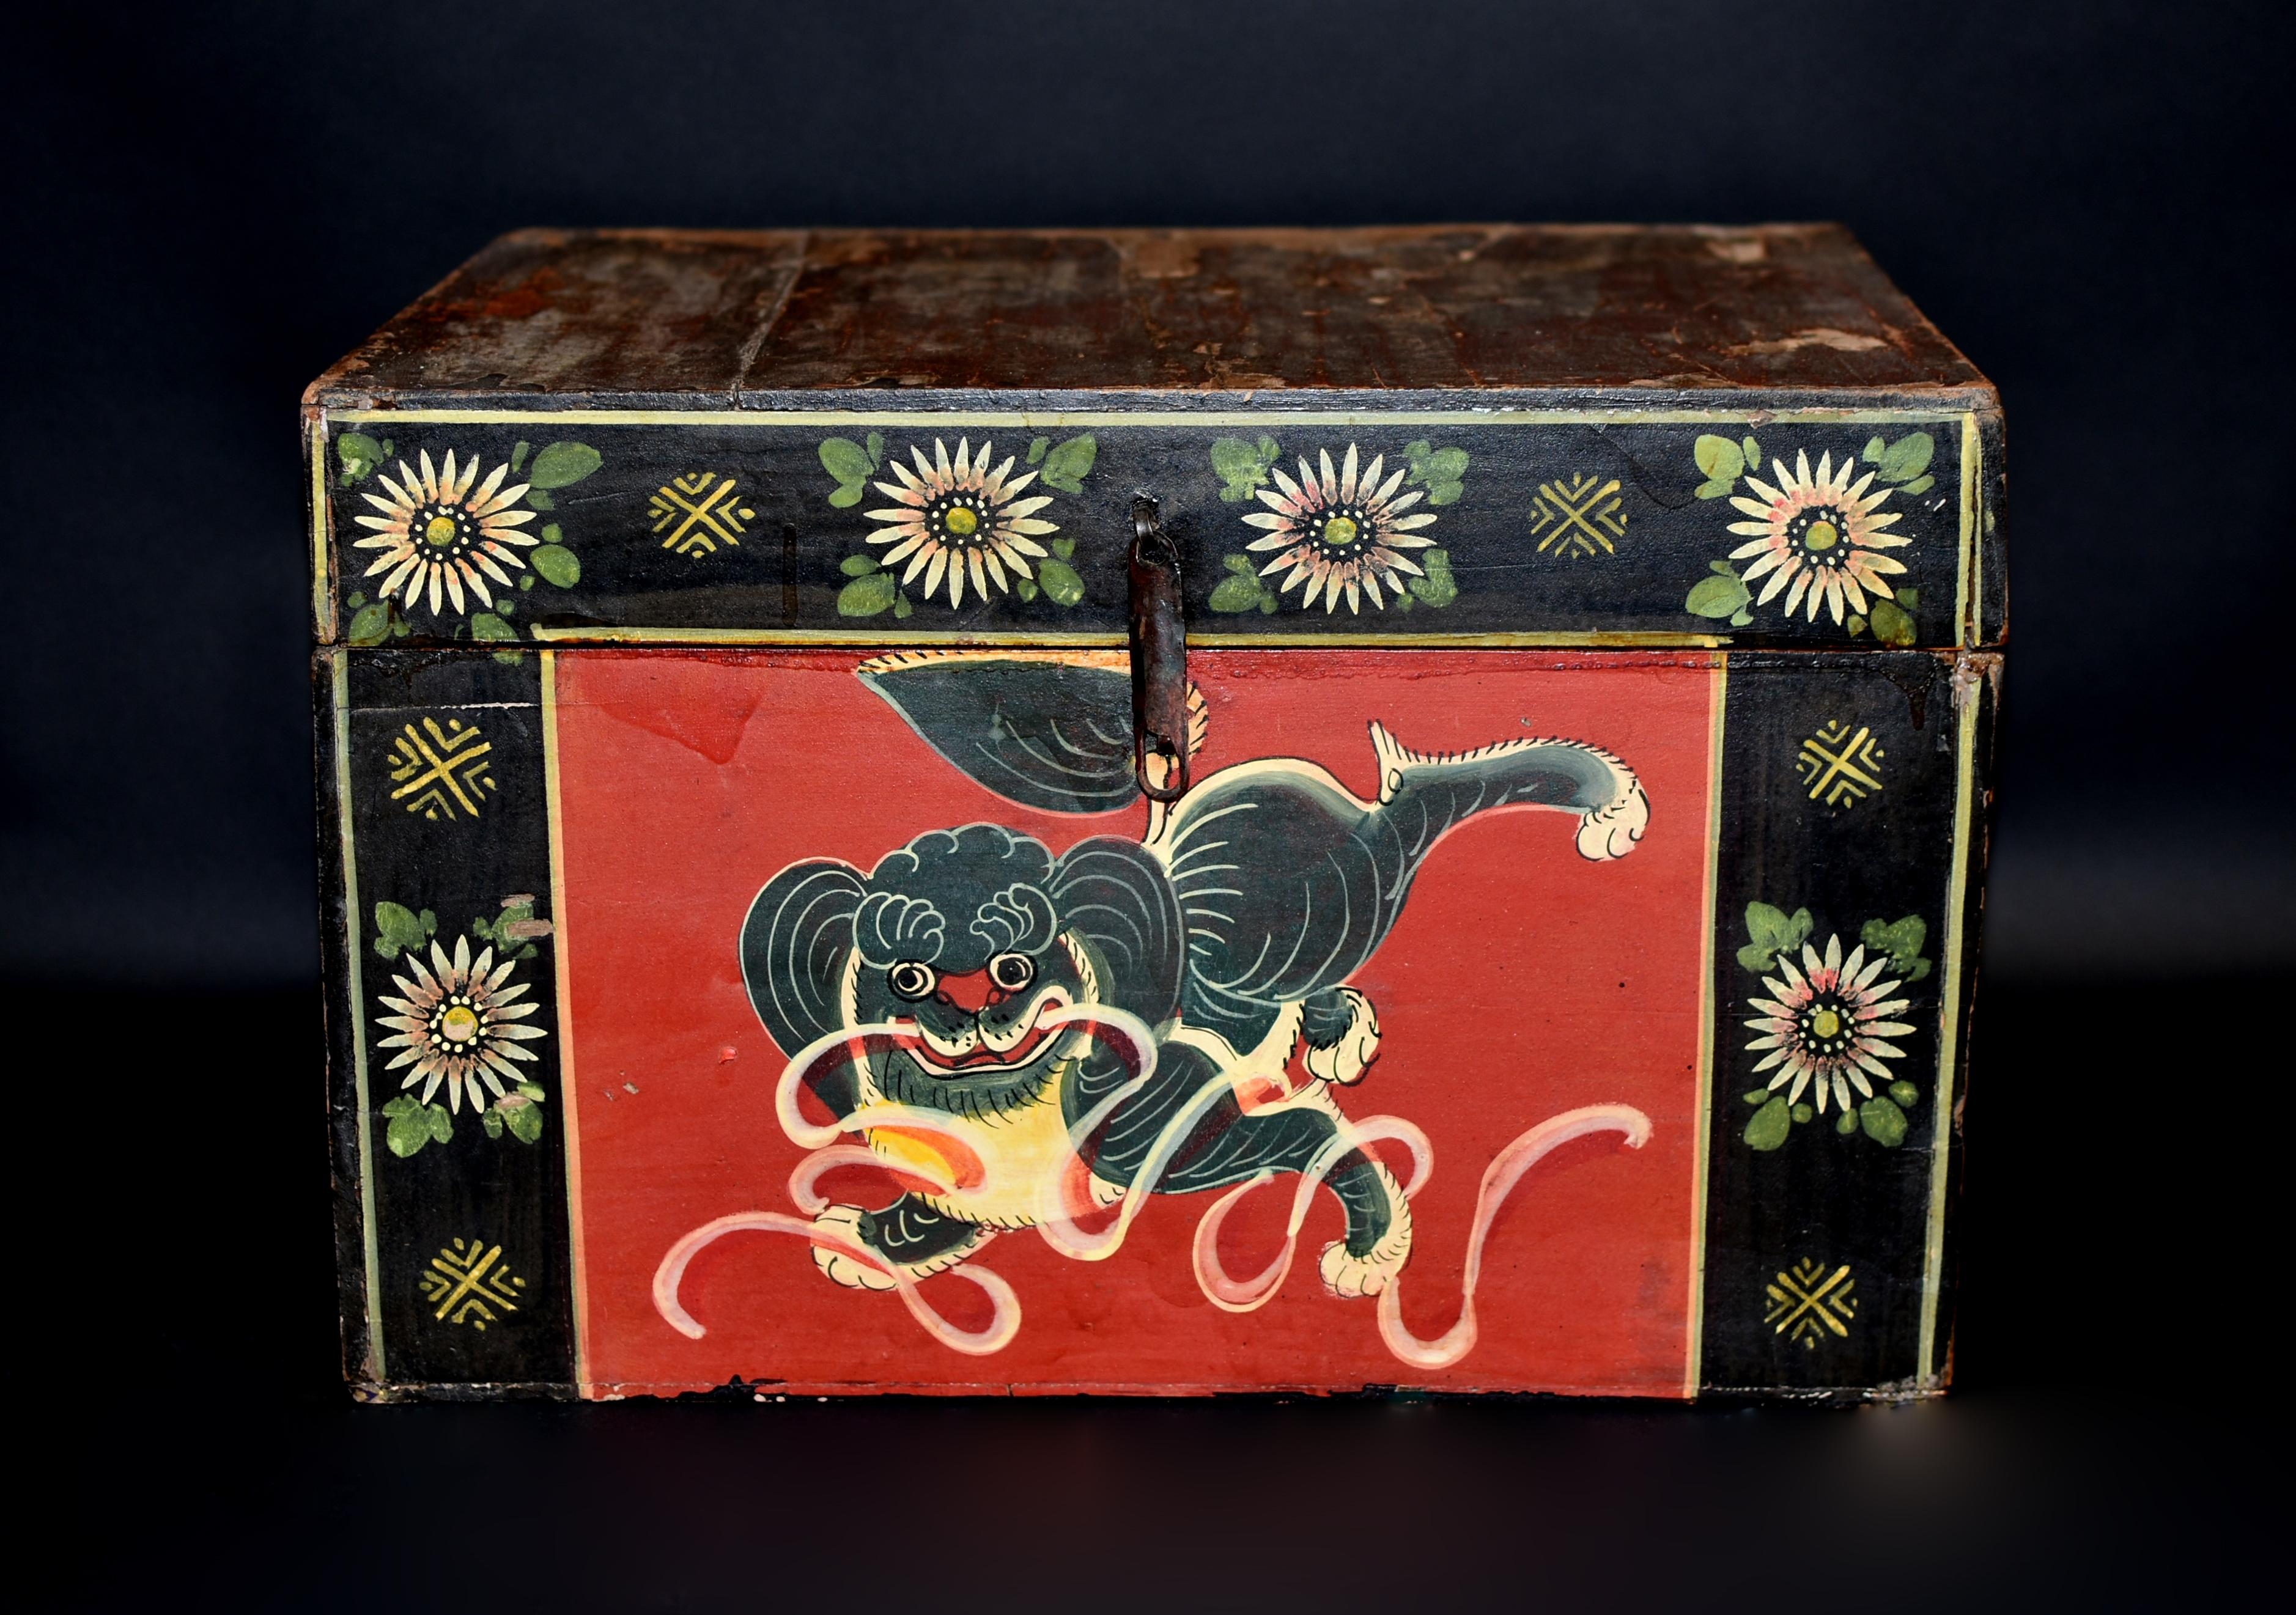 LAST ONE unserer spektakulären antiken foo dog box Sammlung. Diese Box zeigt einen niedlichen Foo Dog, der mit Bändern spielt. Der große Kopf mit großen, unschuldigen Augen und roten Lippen wird von einer gelockten Mähne umrahmt. Fleischige Pfoten